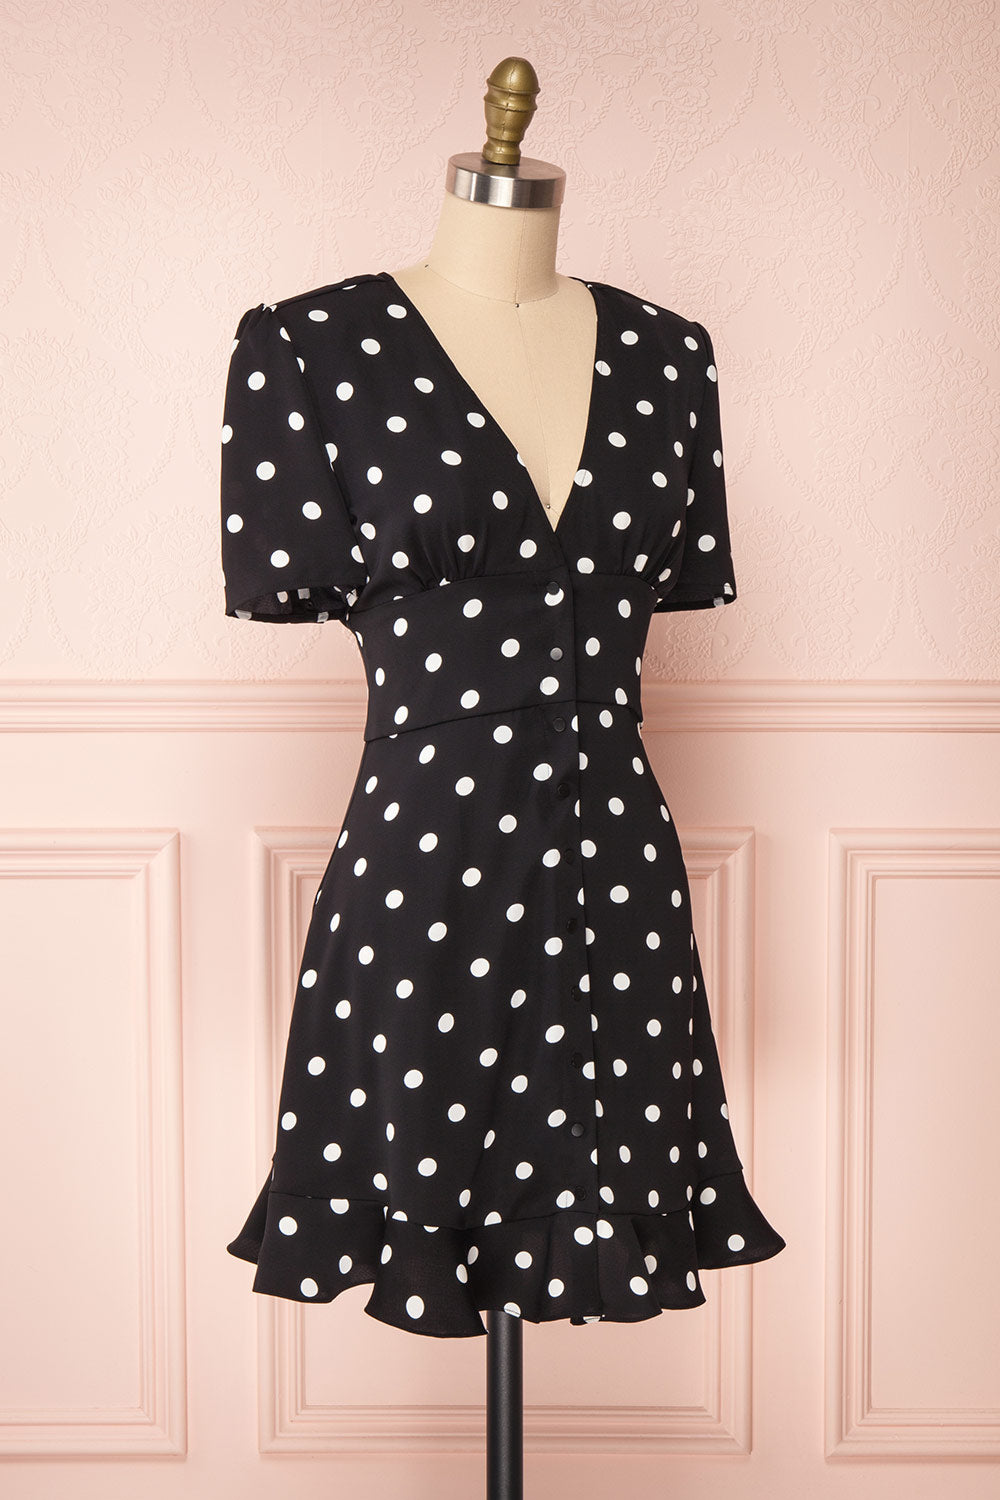 Zinovia Black & White Polka Dot Short Dress | Boutique 1861 side view 